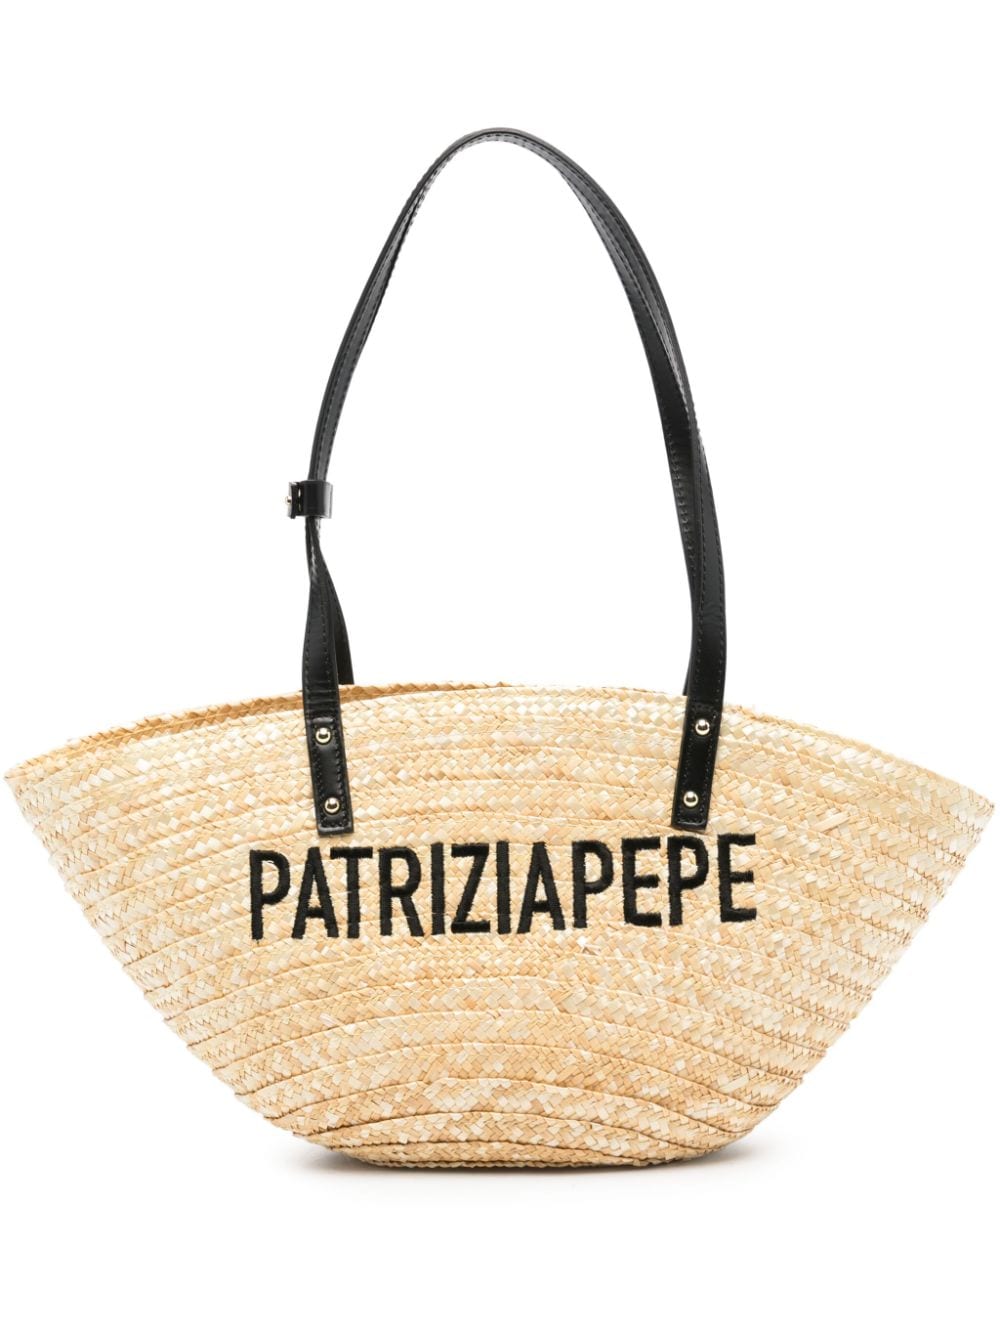 Patrizia Pepe logo-embroidered tote bag - Neutrals von Patrizia Pepe